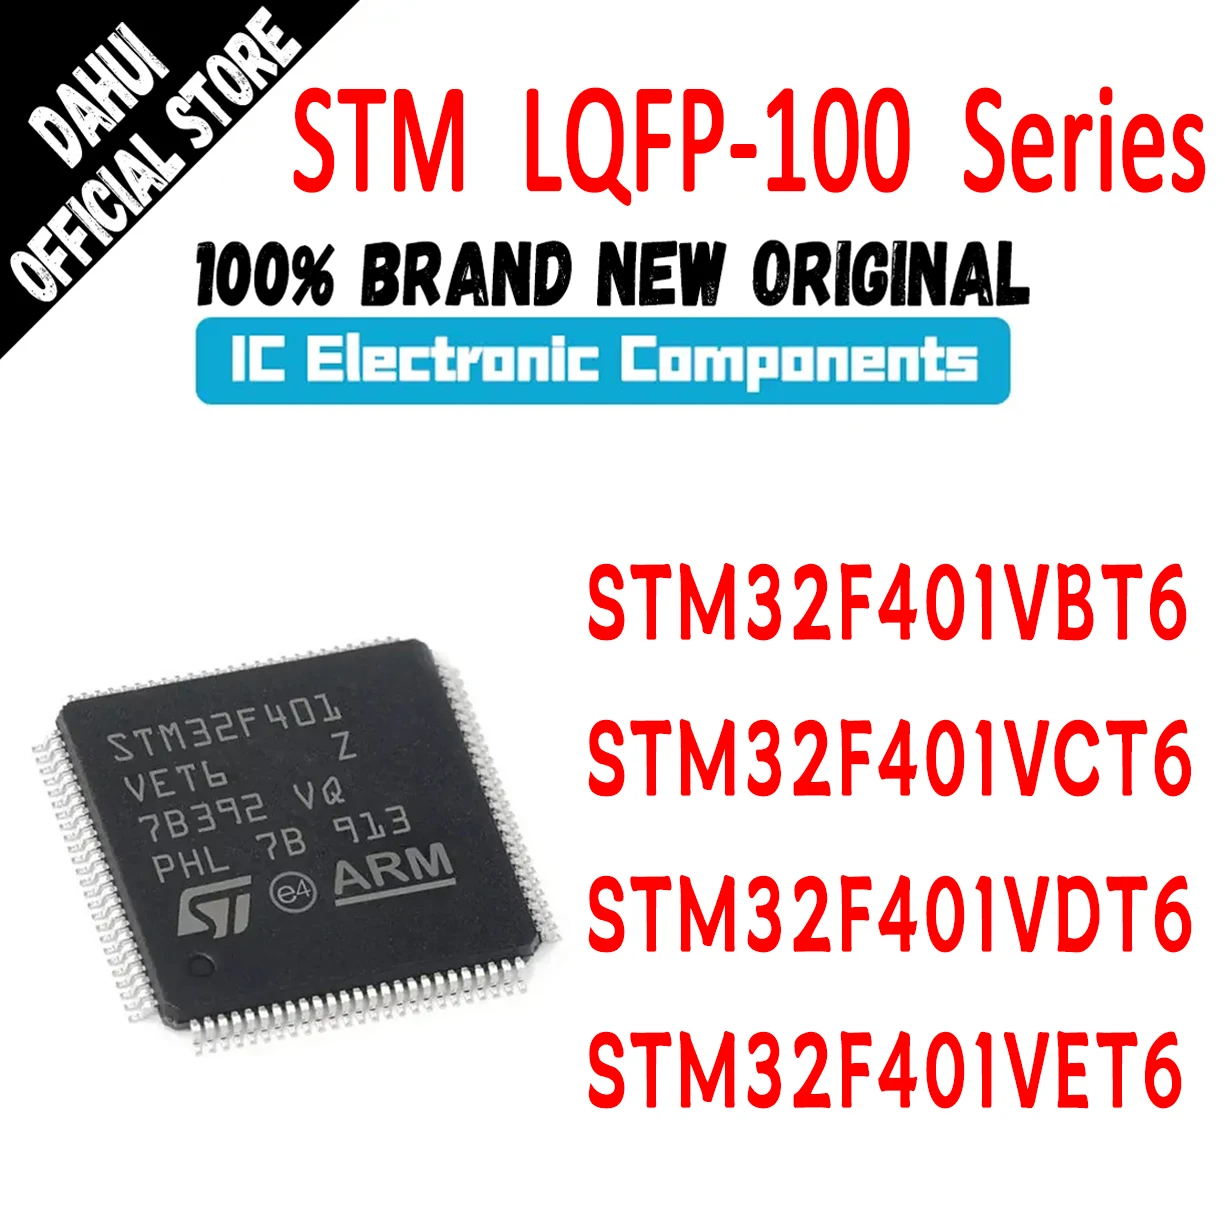 

STM32F401VBT6 STM32F401VCT6 STM32F401VDT6 STM32F401VET6 STM32F401VB STM32F401VC STM32F401VD STM32F401VE STM IC MCU Chip LQFP100